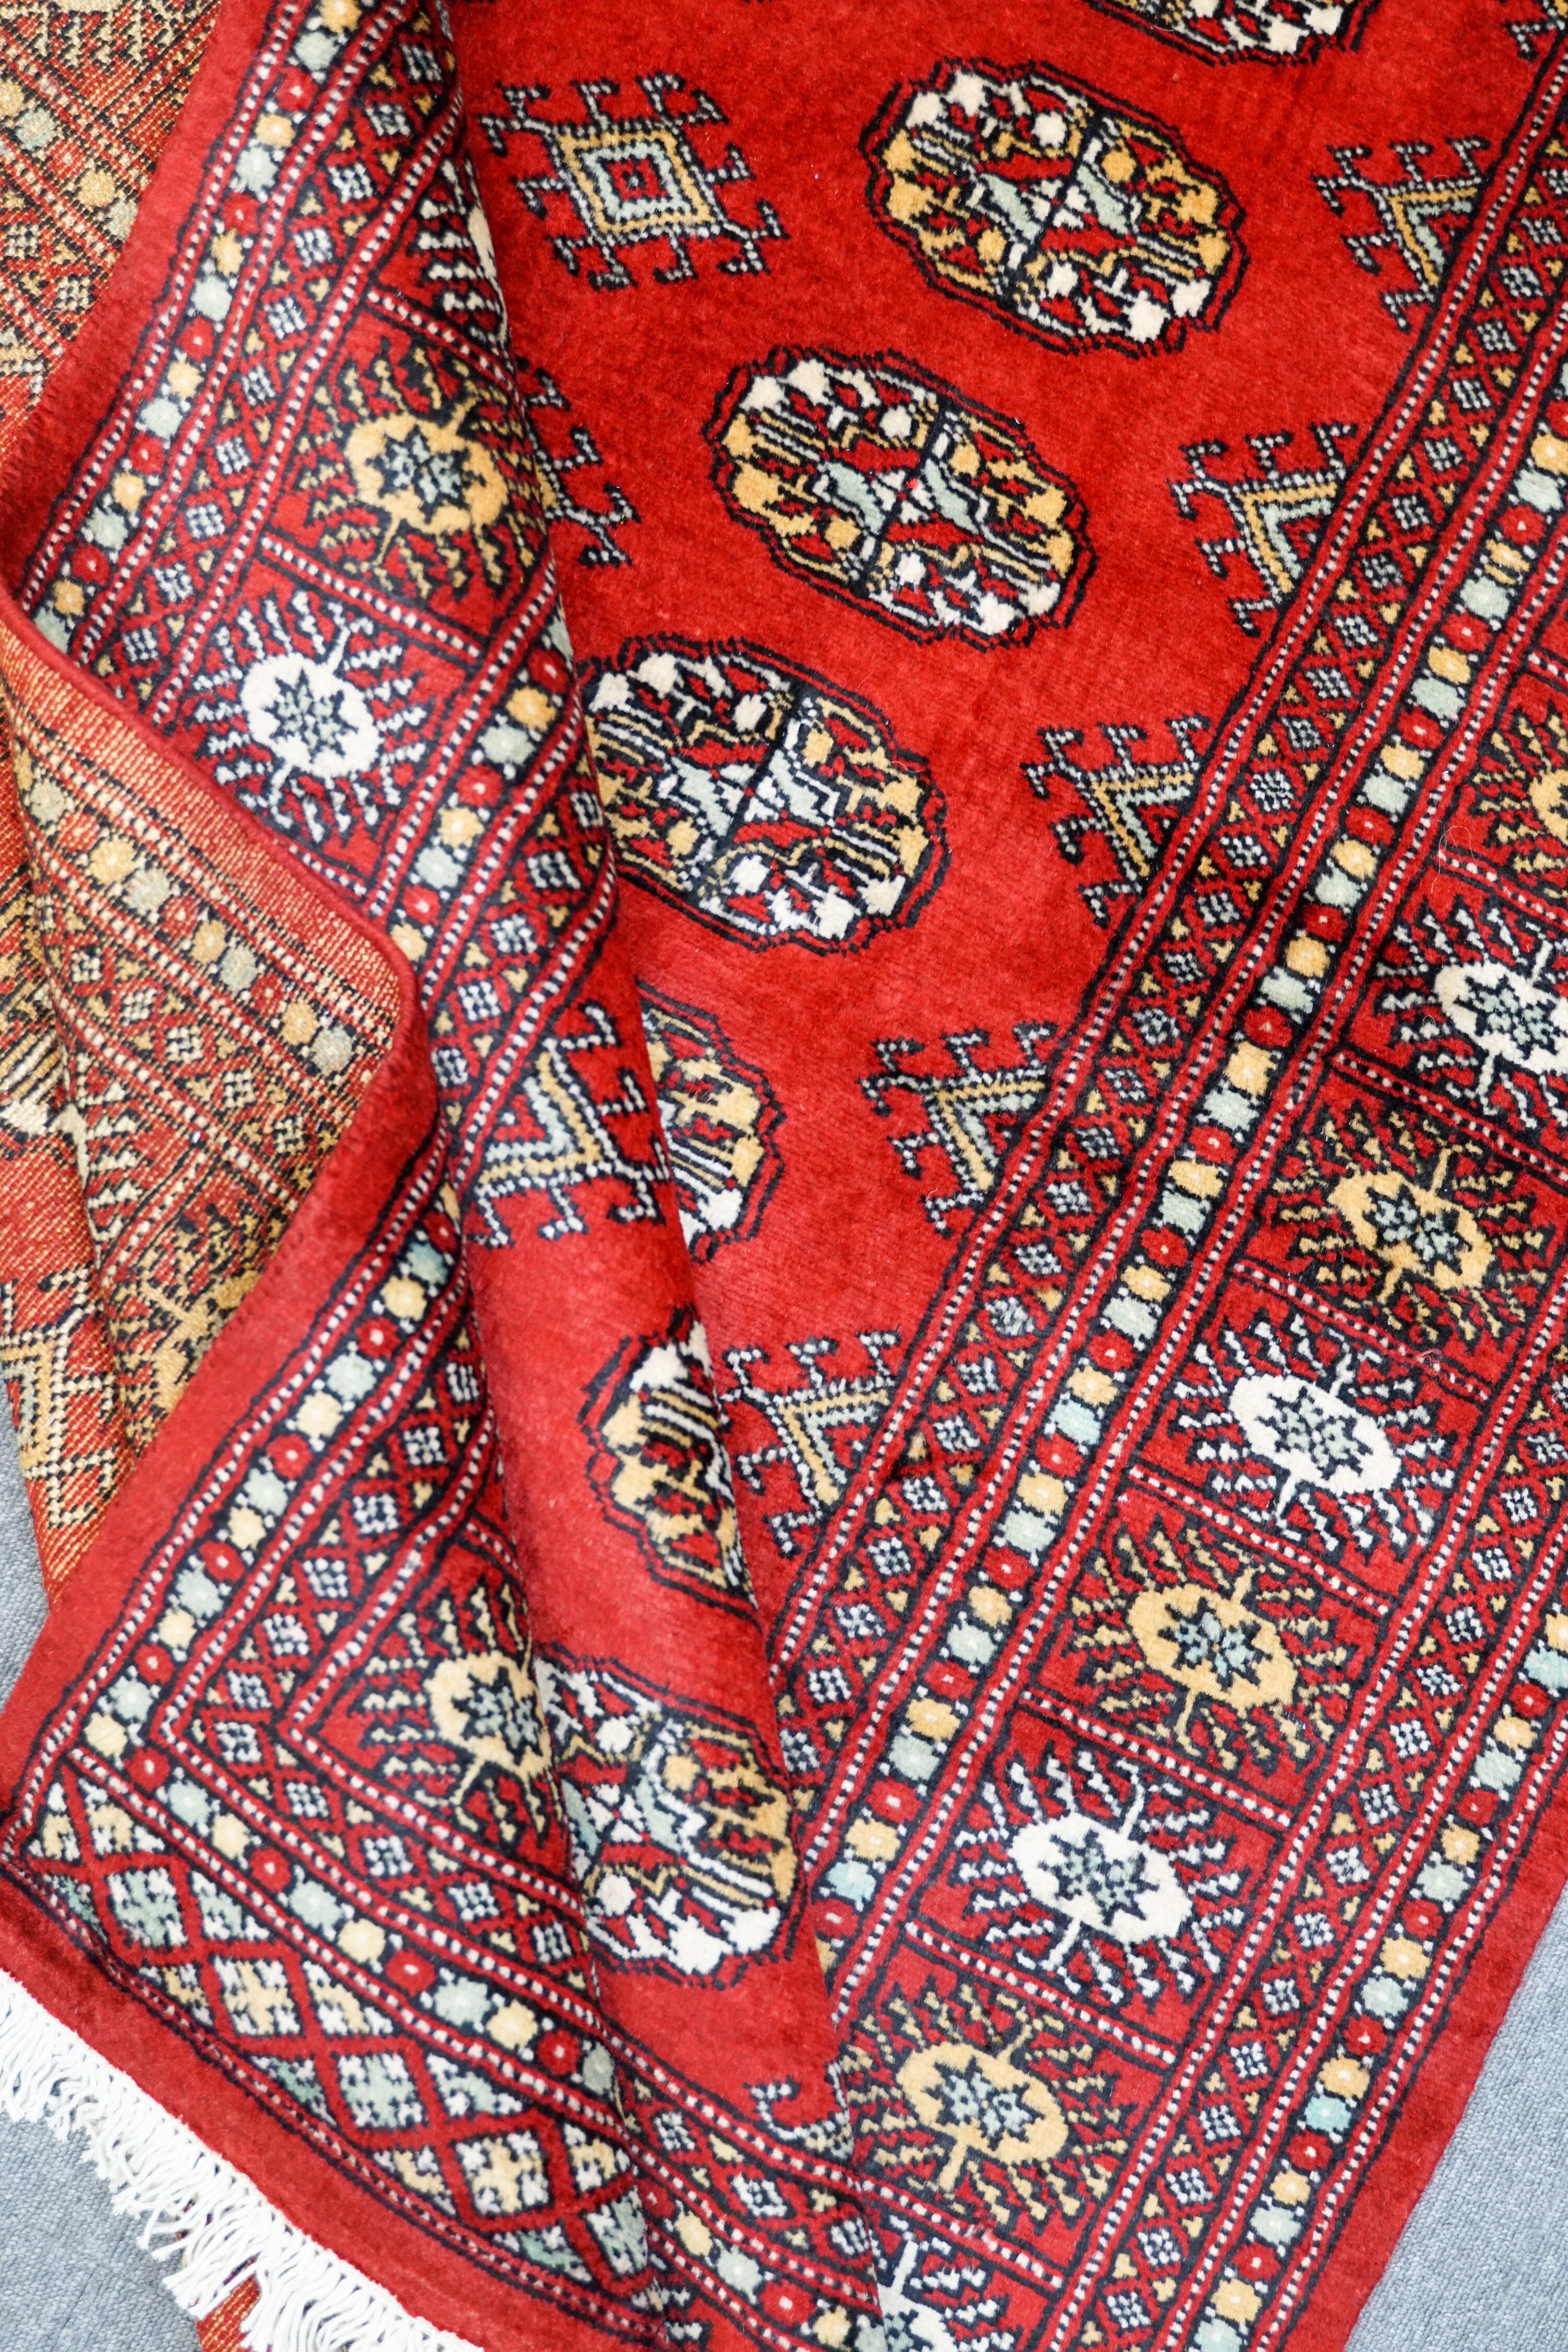 188×124cm【パキスタン手織り絨毯】 Decorworks